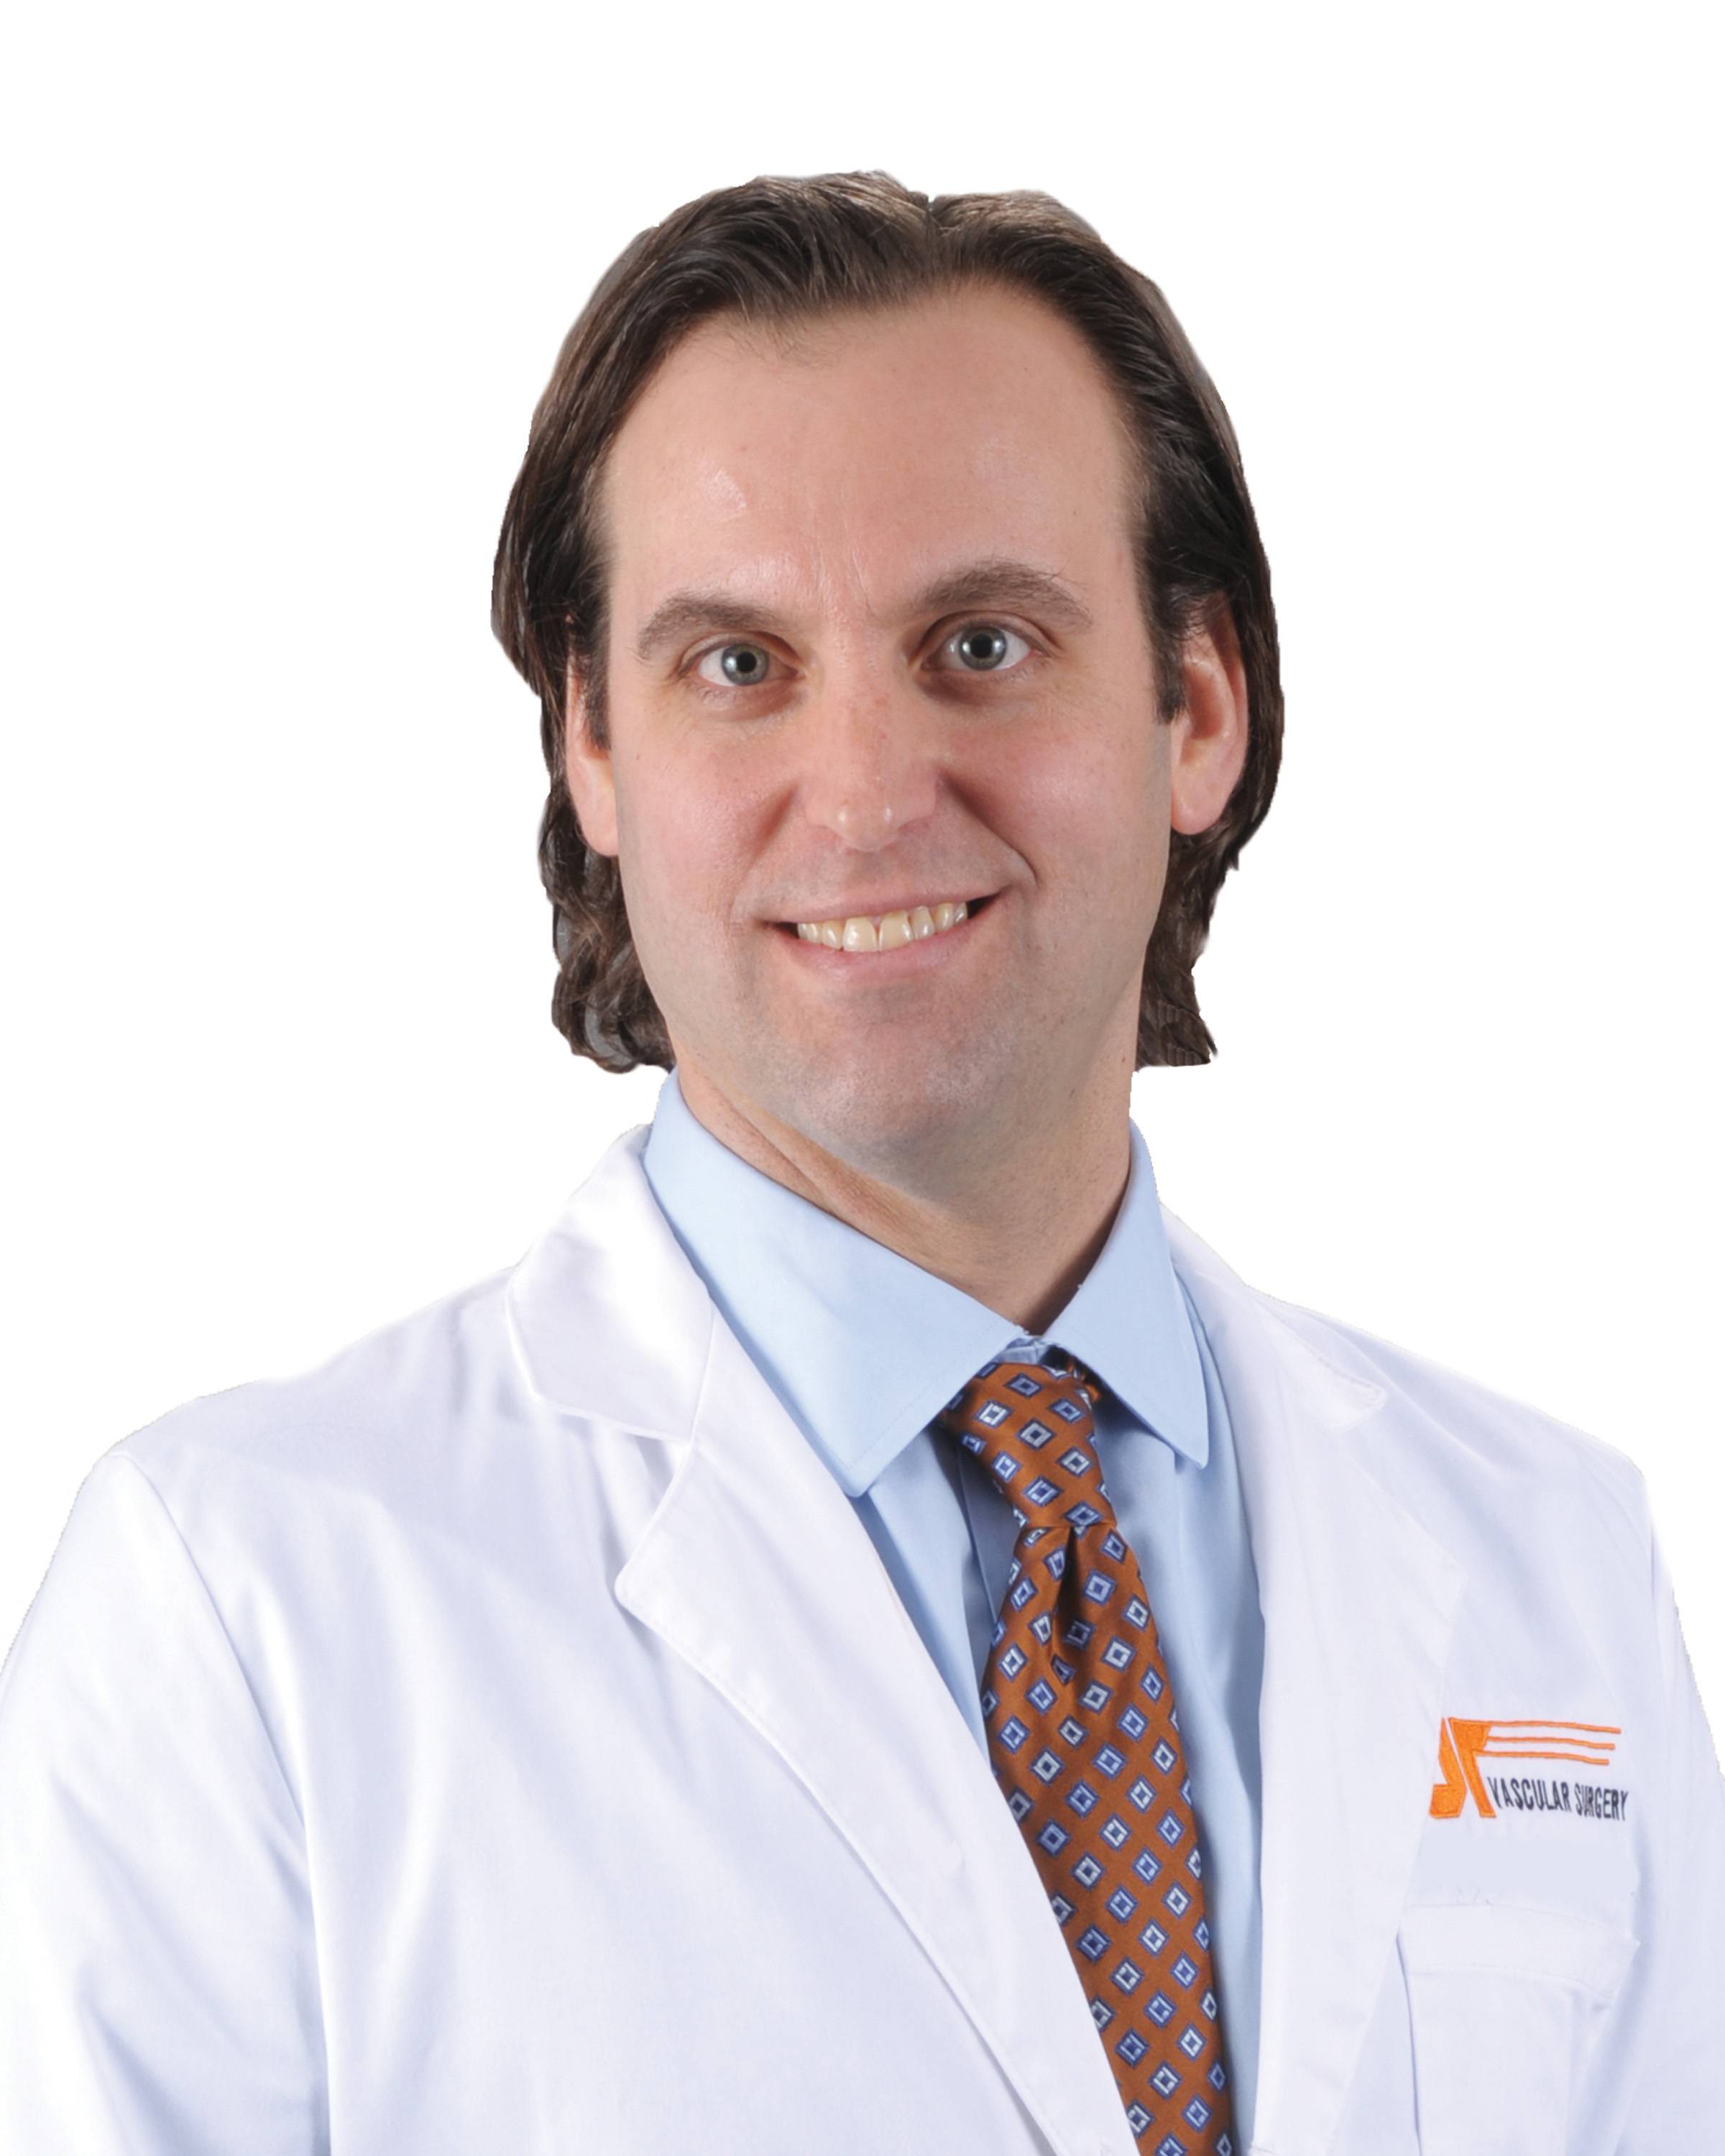 Charles Joels, MD, Associate Program Director, Vascular Surgery Fellowship